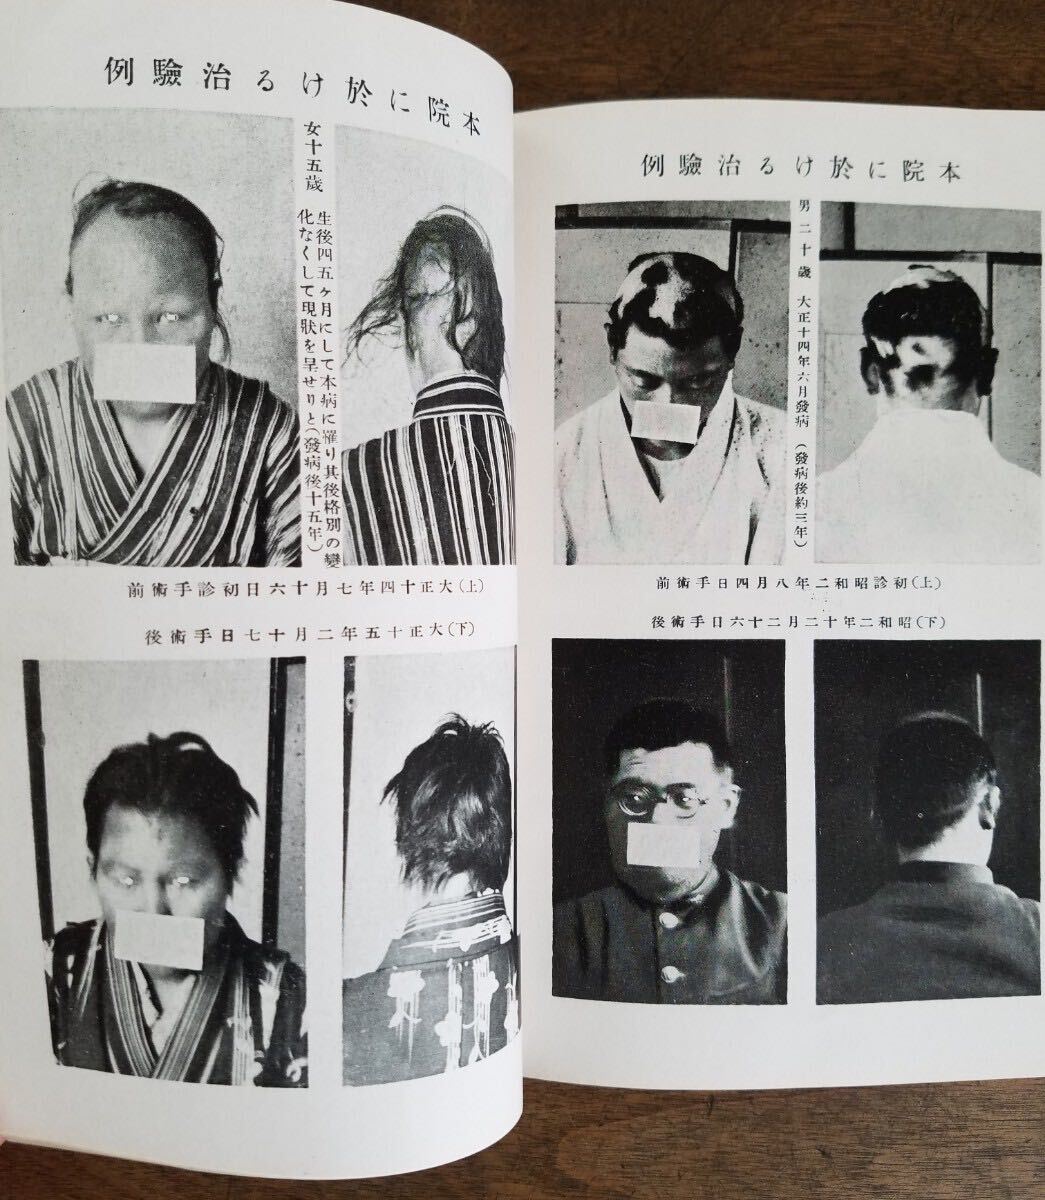 30s 戦前 円形 脱毛症 禿髪症 冊子 資料 南龍堂 医院 昭和 8年 1933年 患者 病状 病気 症状 写真 朝鮮 満洲 台湾 出征 軍人 伝染 流行 病 の画像3